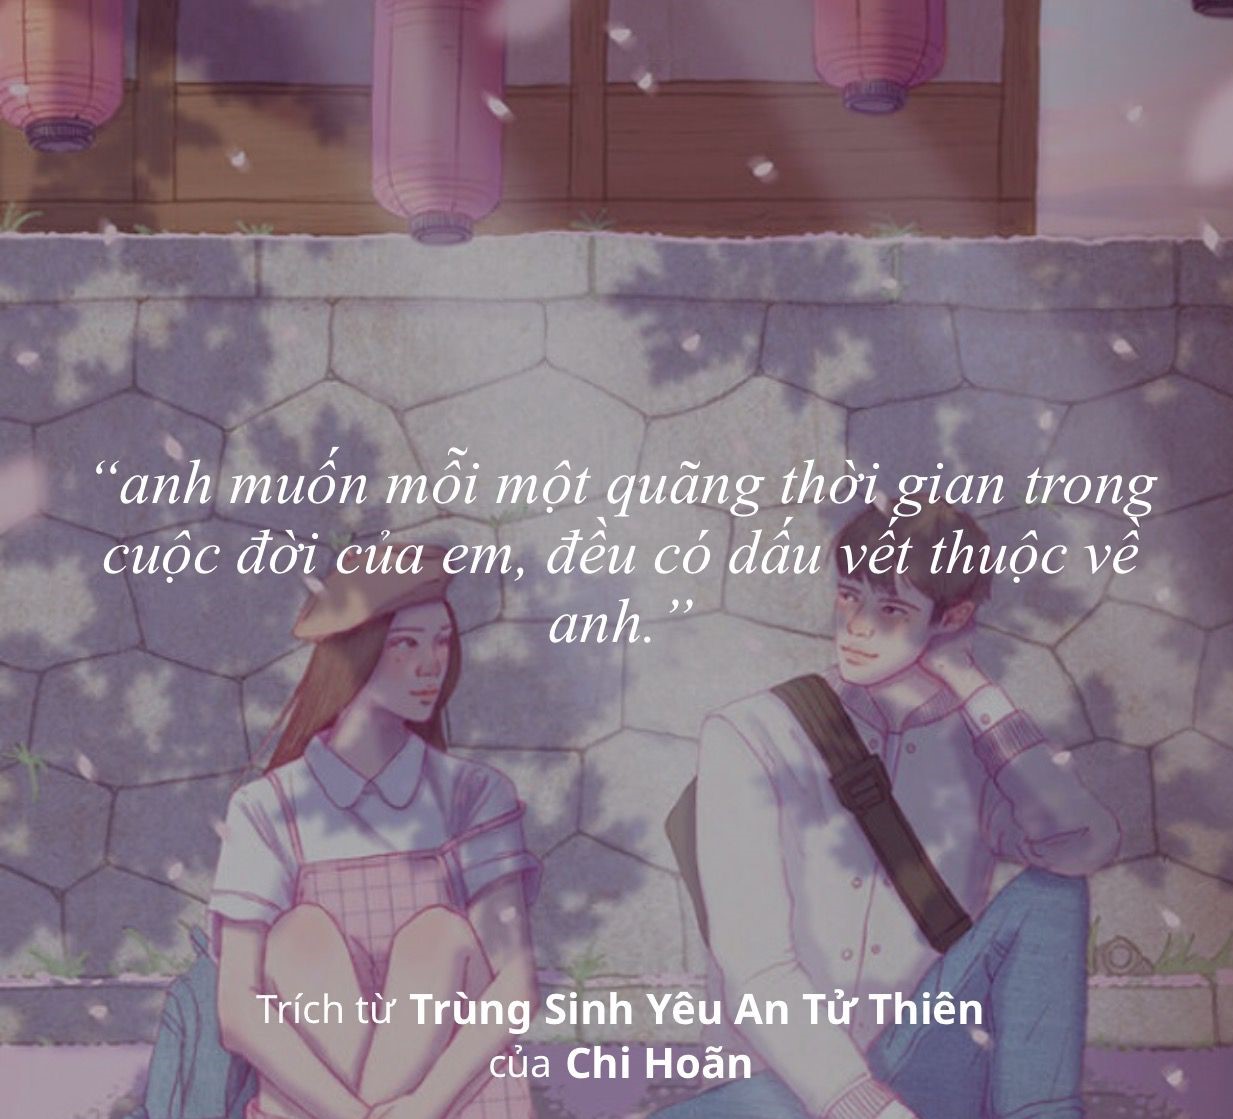 Trung Sinh Yeu An Tu Thien